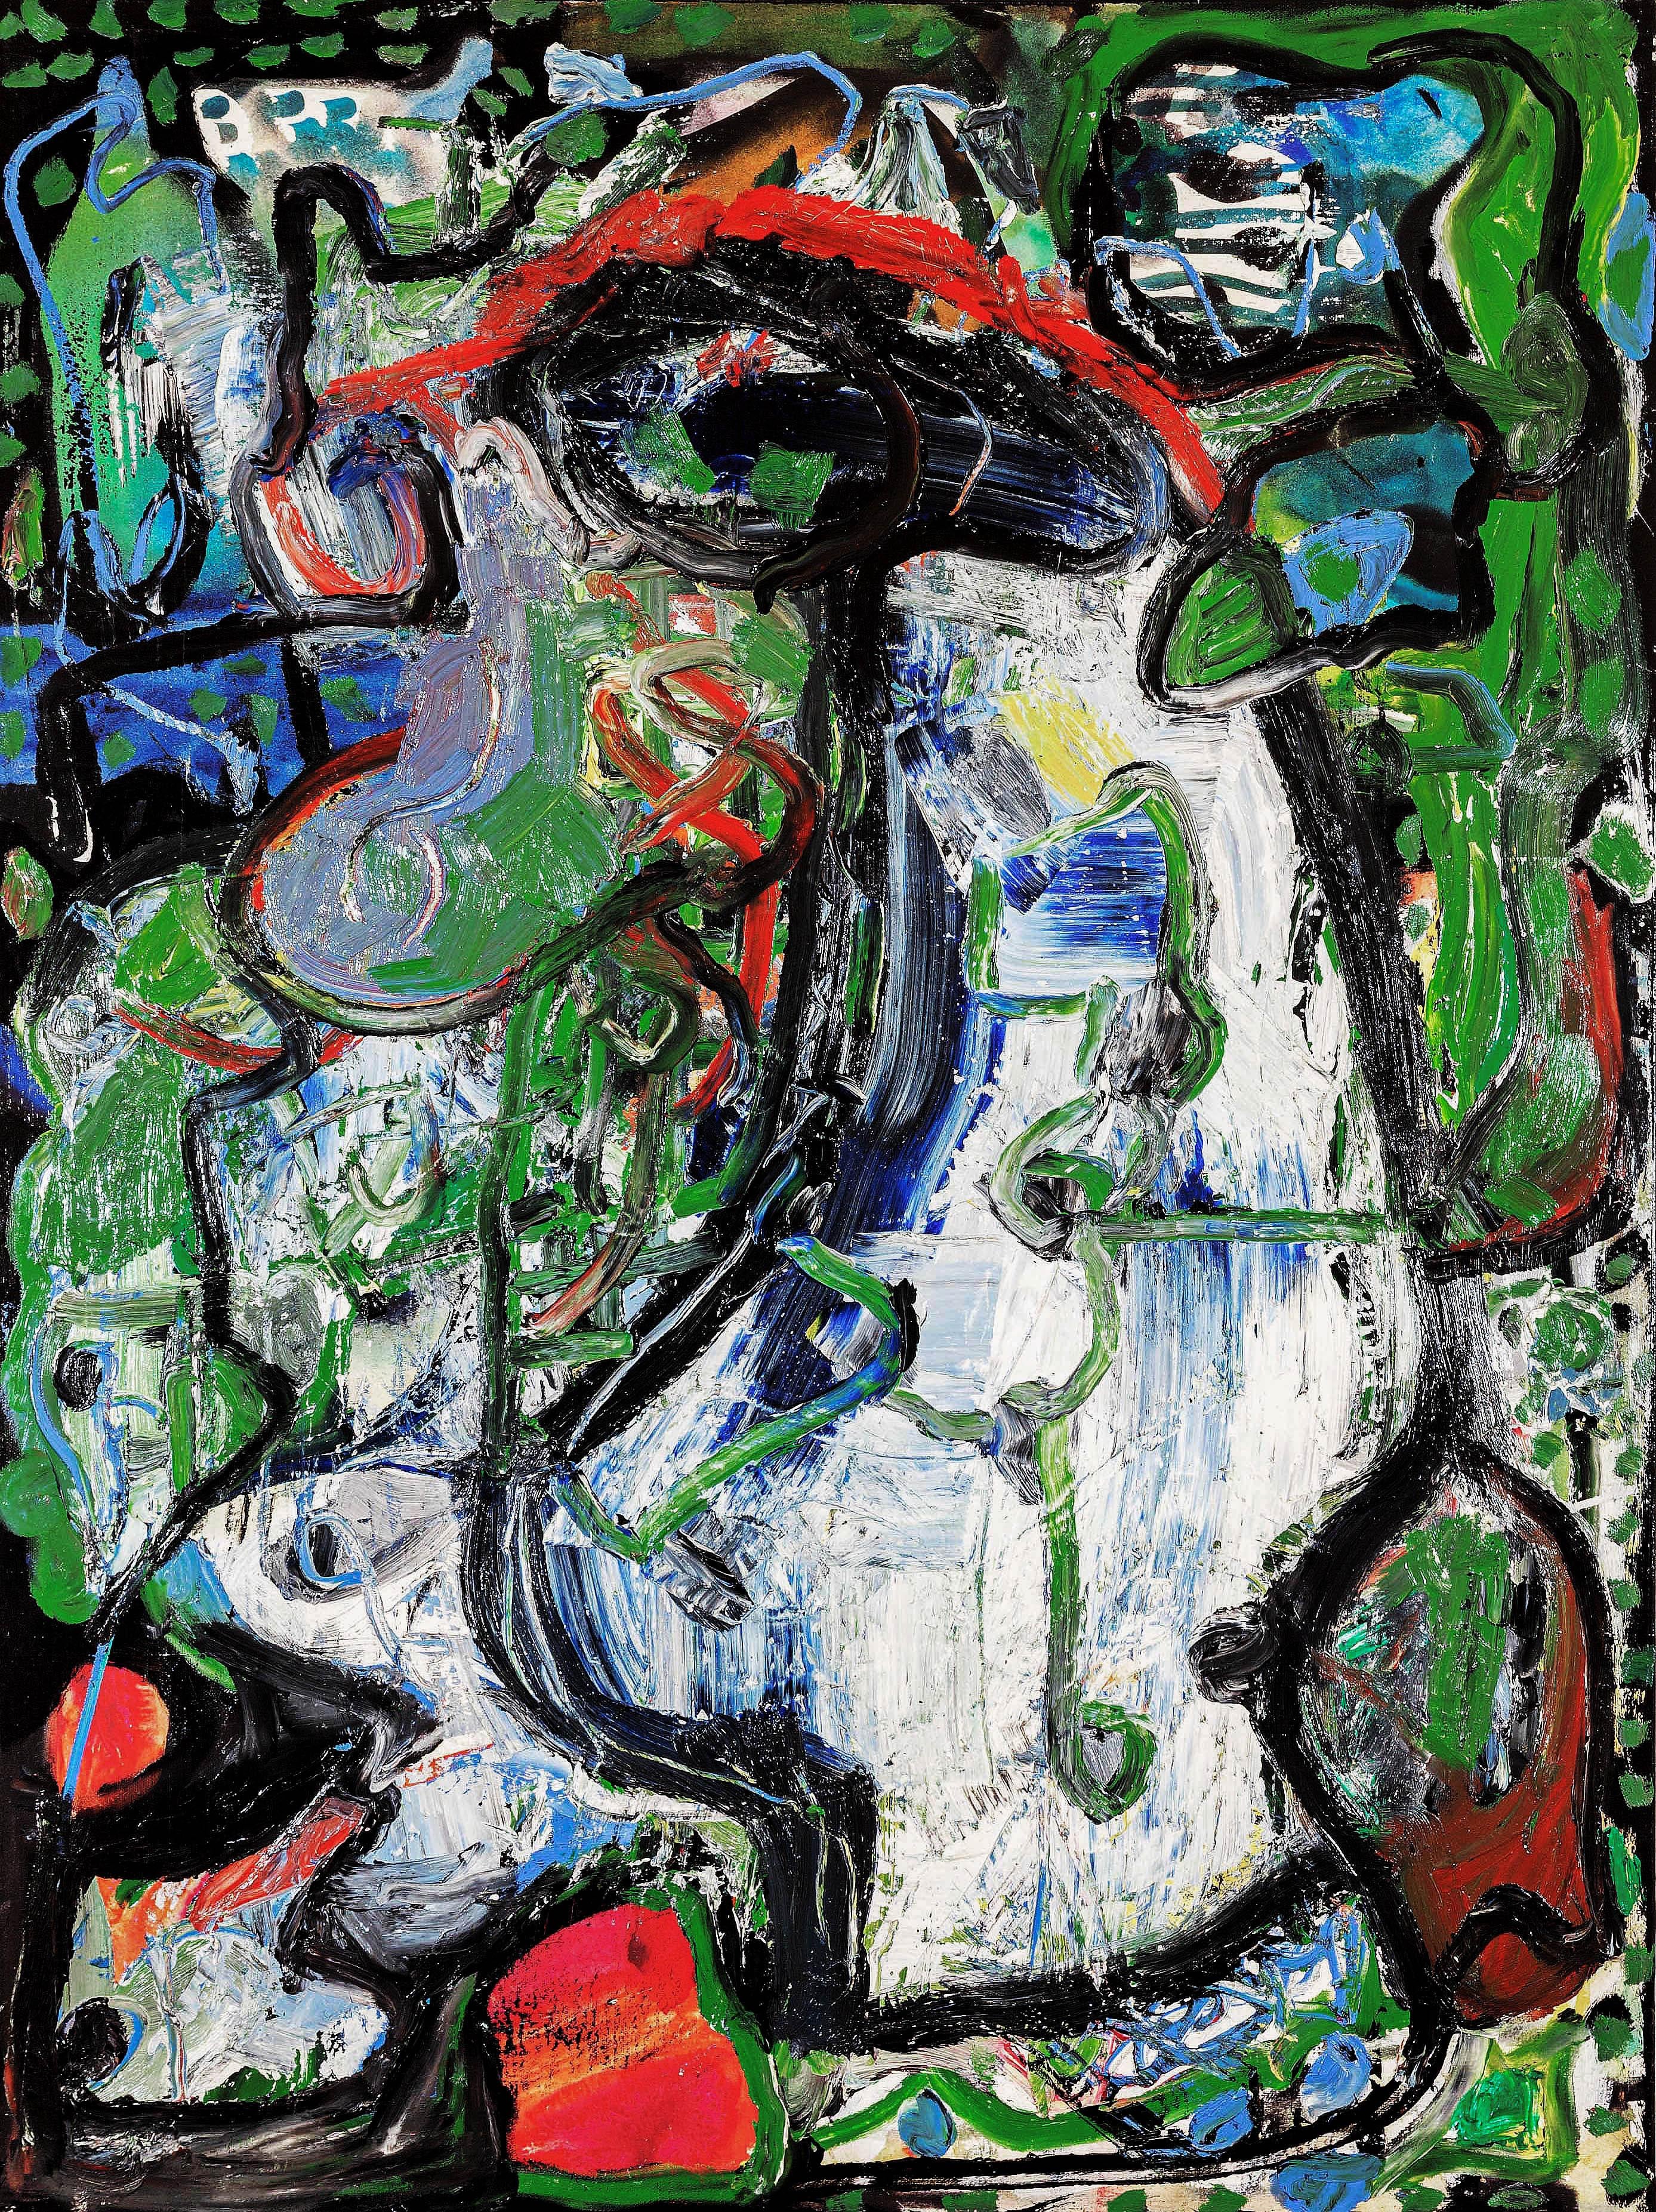 Abstract Painting Dick Wray - « Sans titre », huile, technique mixte sur toile - peinture abstraite